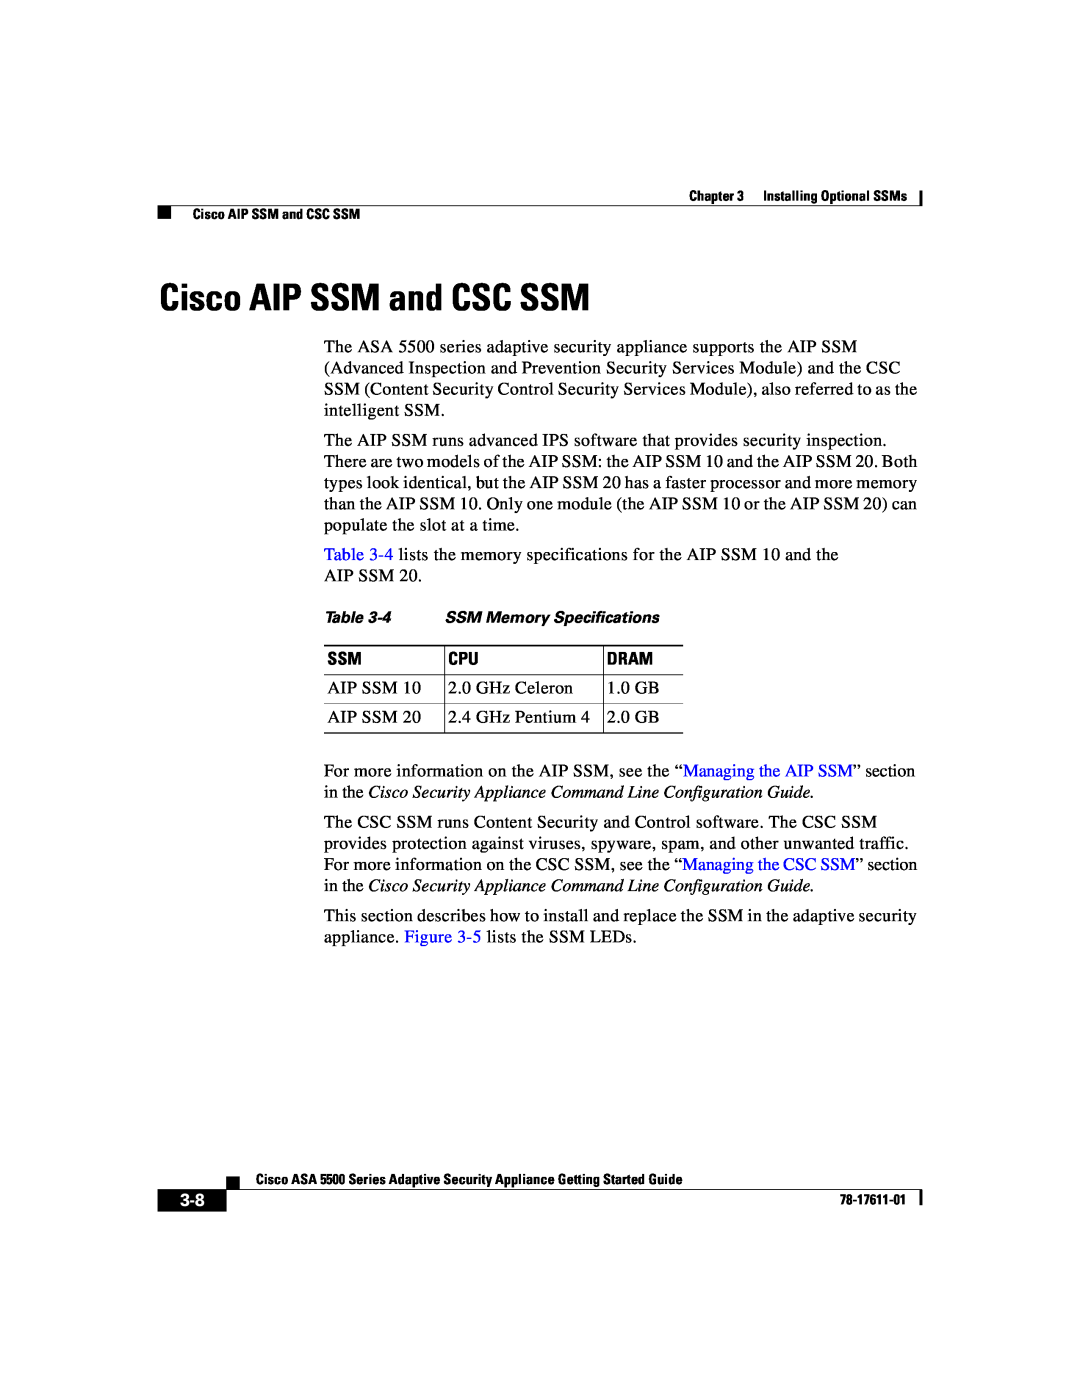 Cisco Systems ASA 5500 manual Cisco AIP SSM and CSC SSM, Dram 